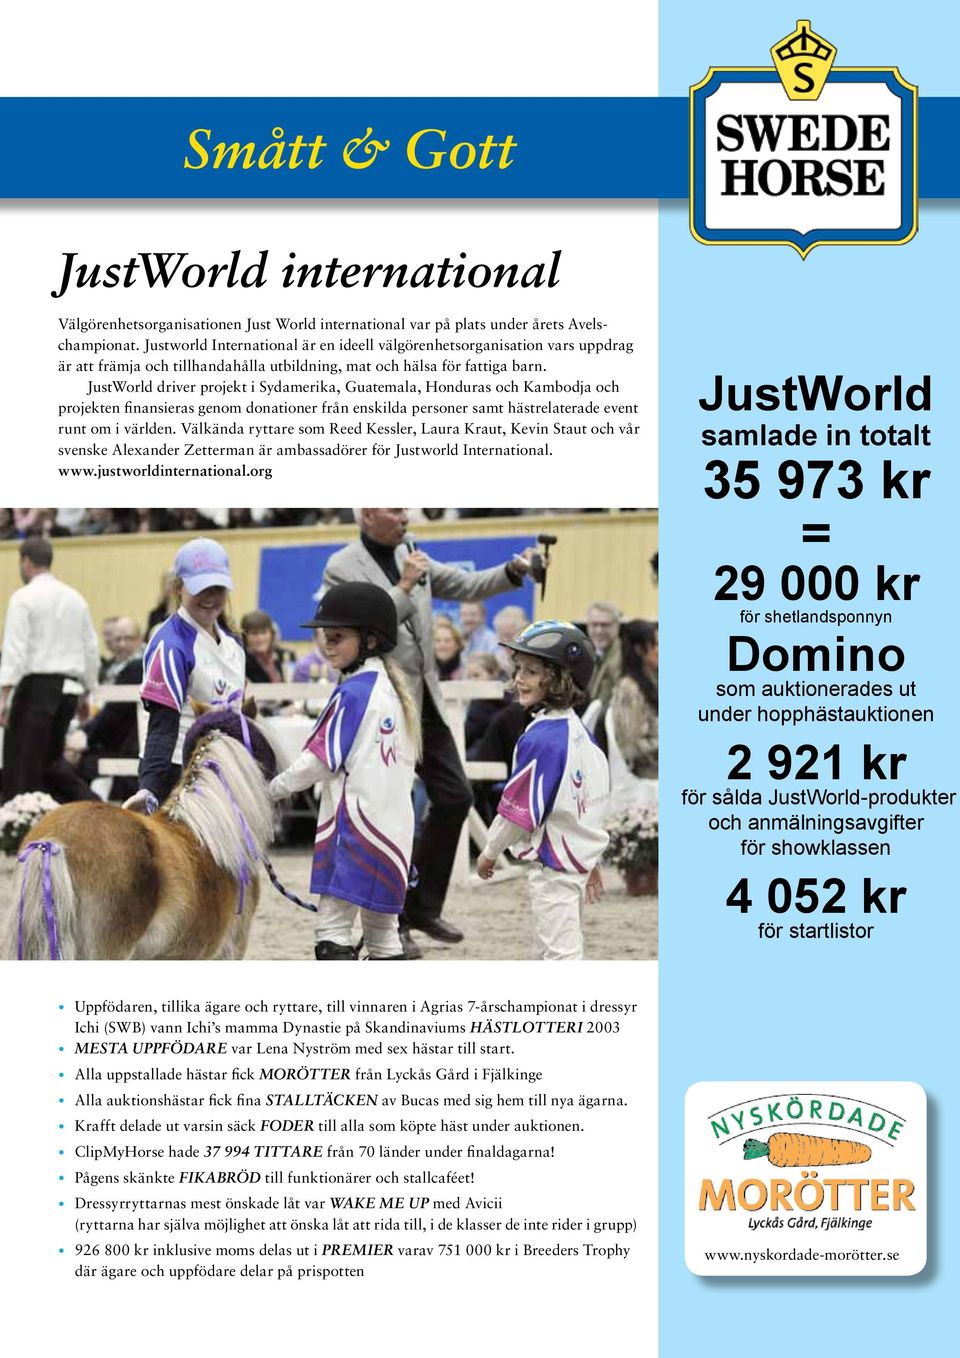 JustWorld driver projekt i Sydamerika, Guatemala, Honduras och Kambodja och projekten finansieras genom donationer från enskilda personer samt hästrelaterade event runt om i världen.